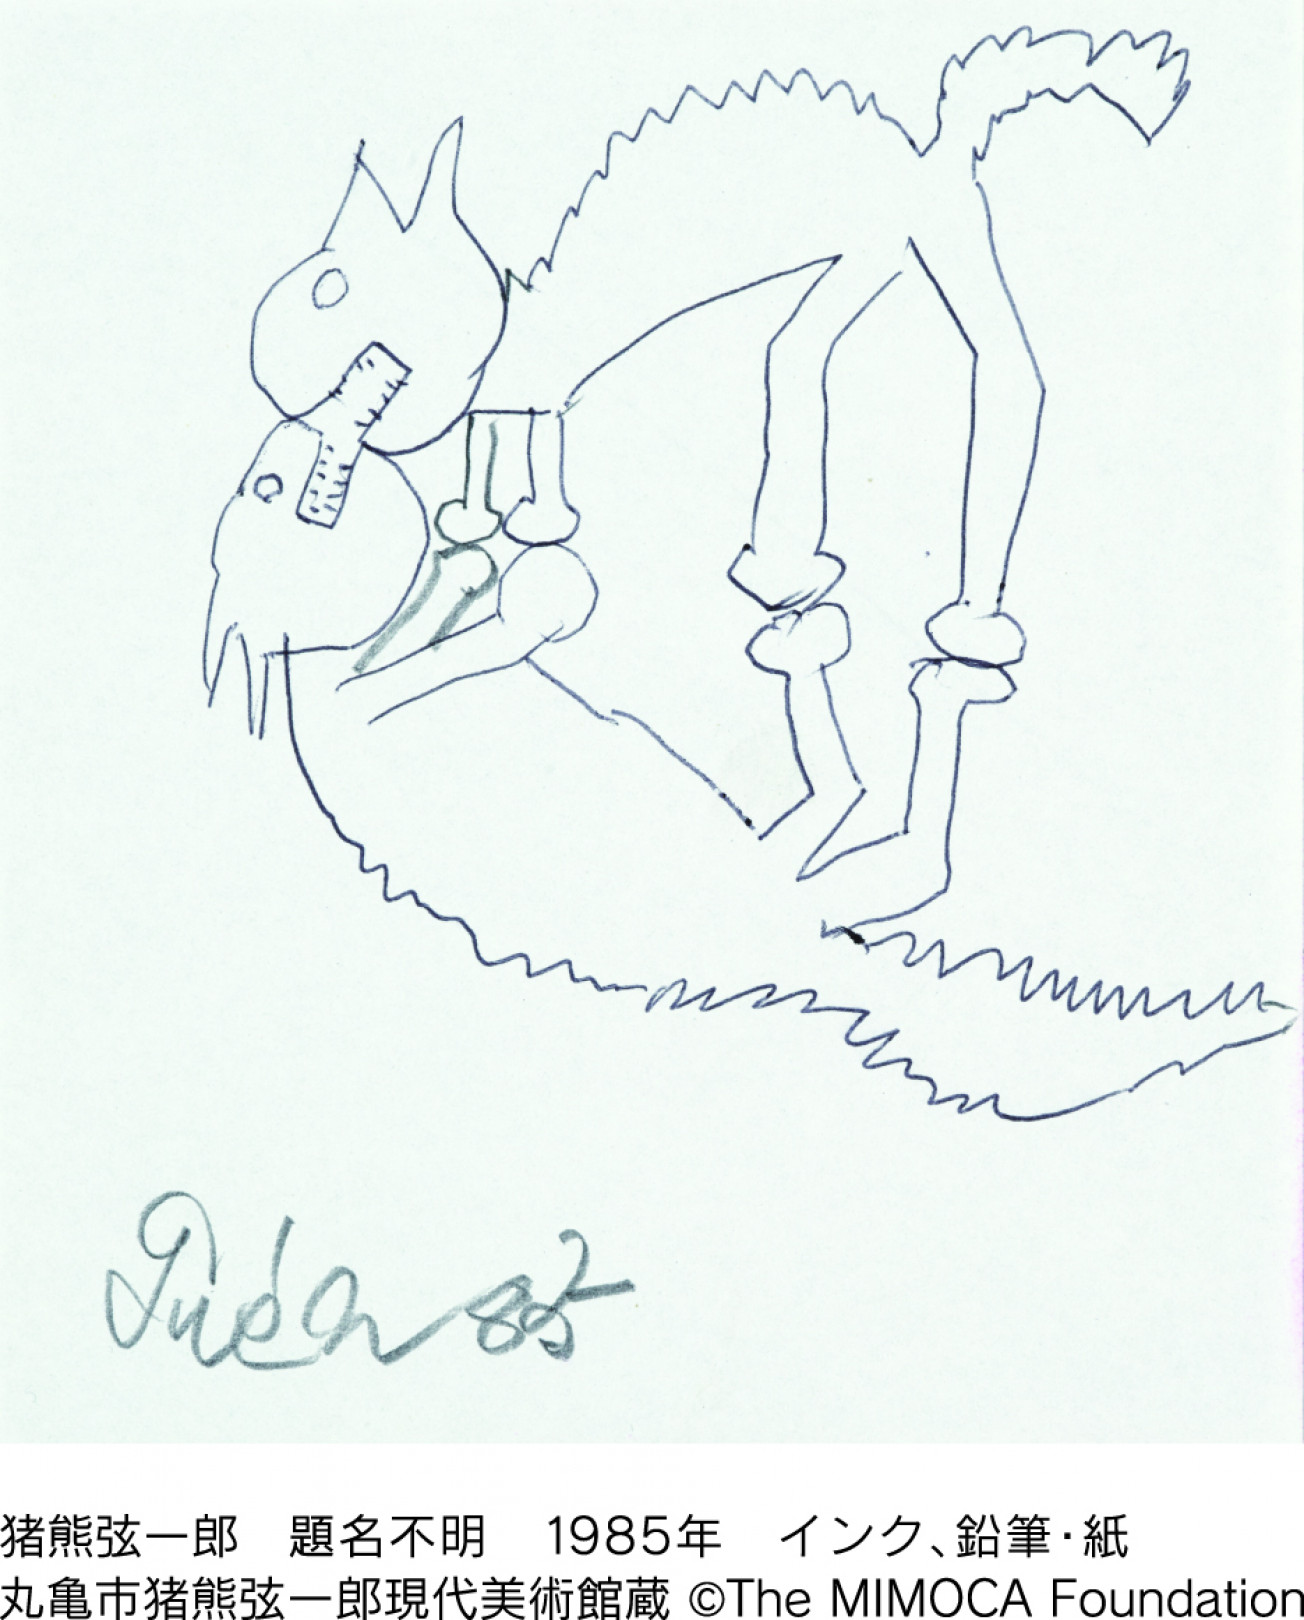 猪熊弦一郎 題名不明 1985年 インク、鉛筆・紙 丸亀市猪熊弦一郎現代美術館蔵 ©The MIMOCA Foundation